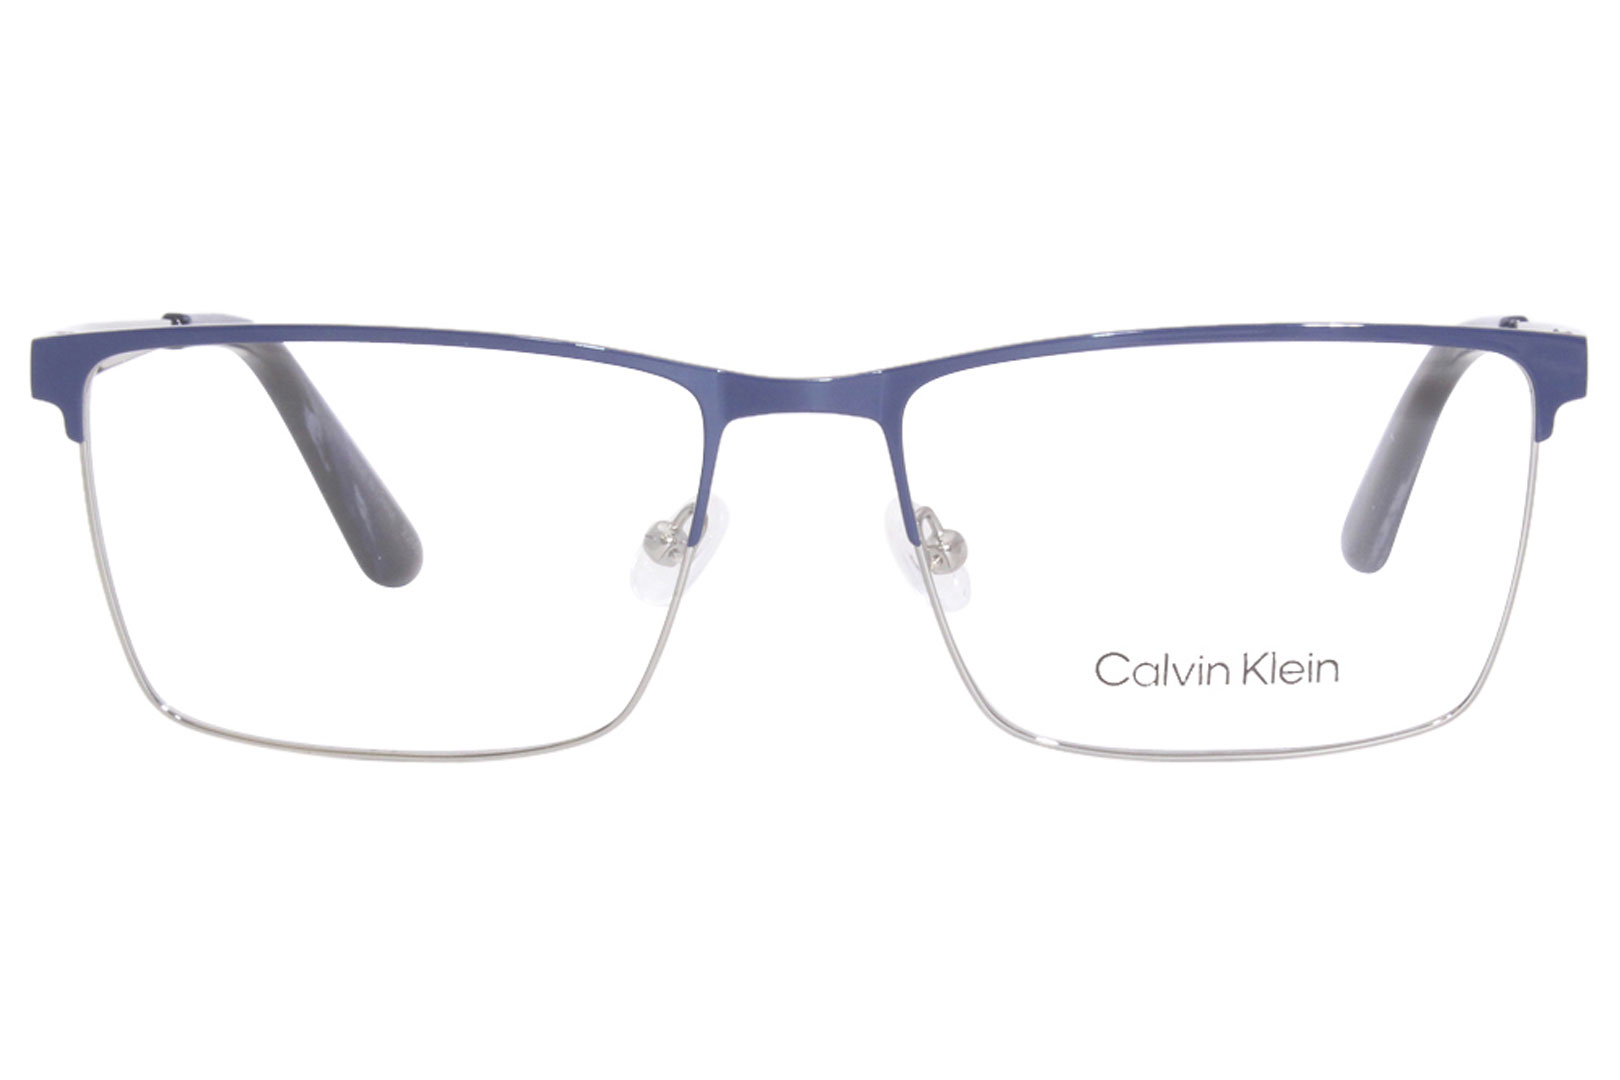 Calvin Klein CK22102 460 Eyeglasses Men's Blue/Gunmetal Full Rim 57-17 ...